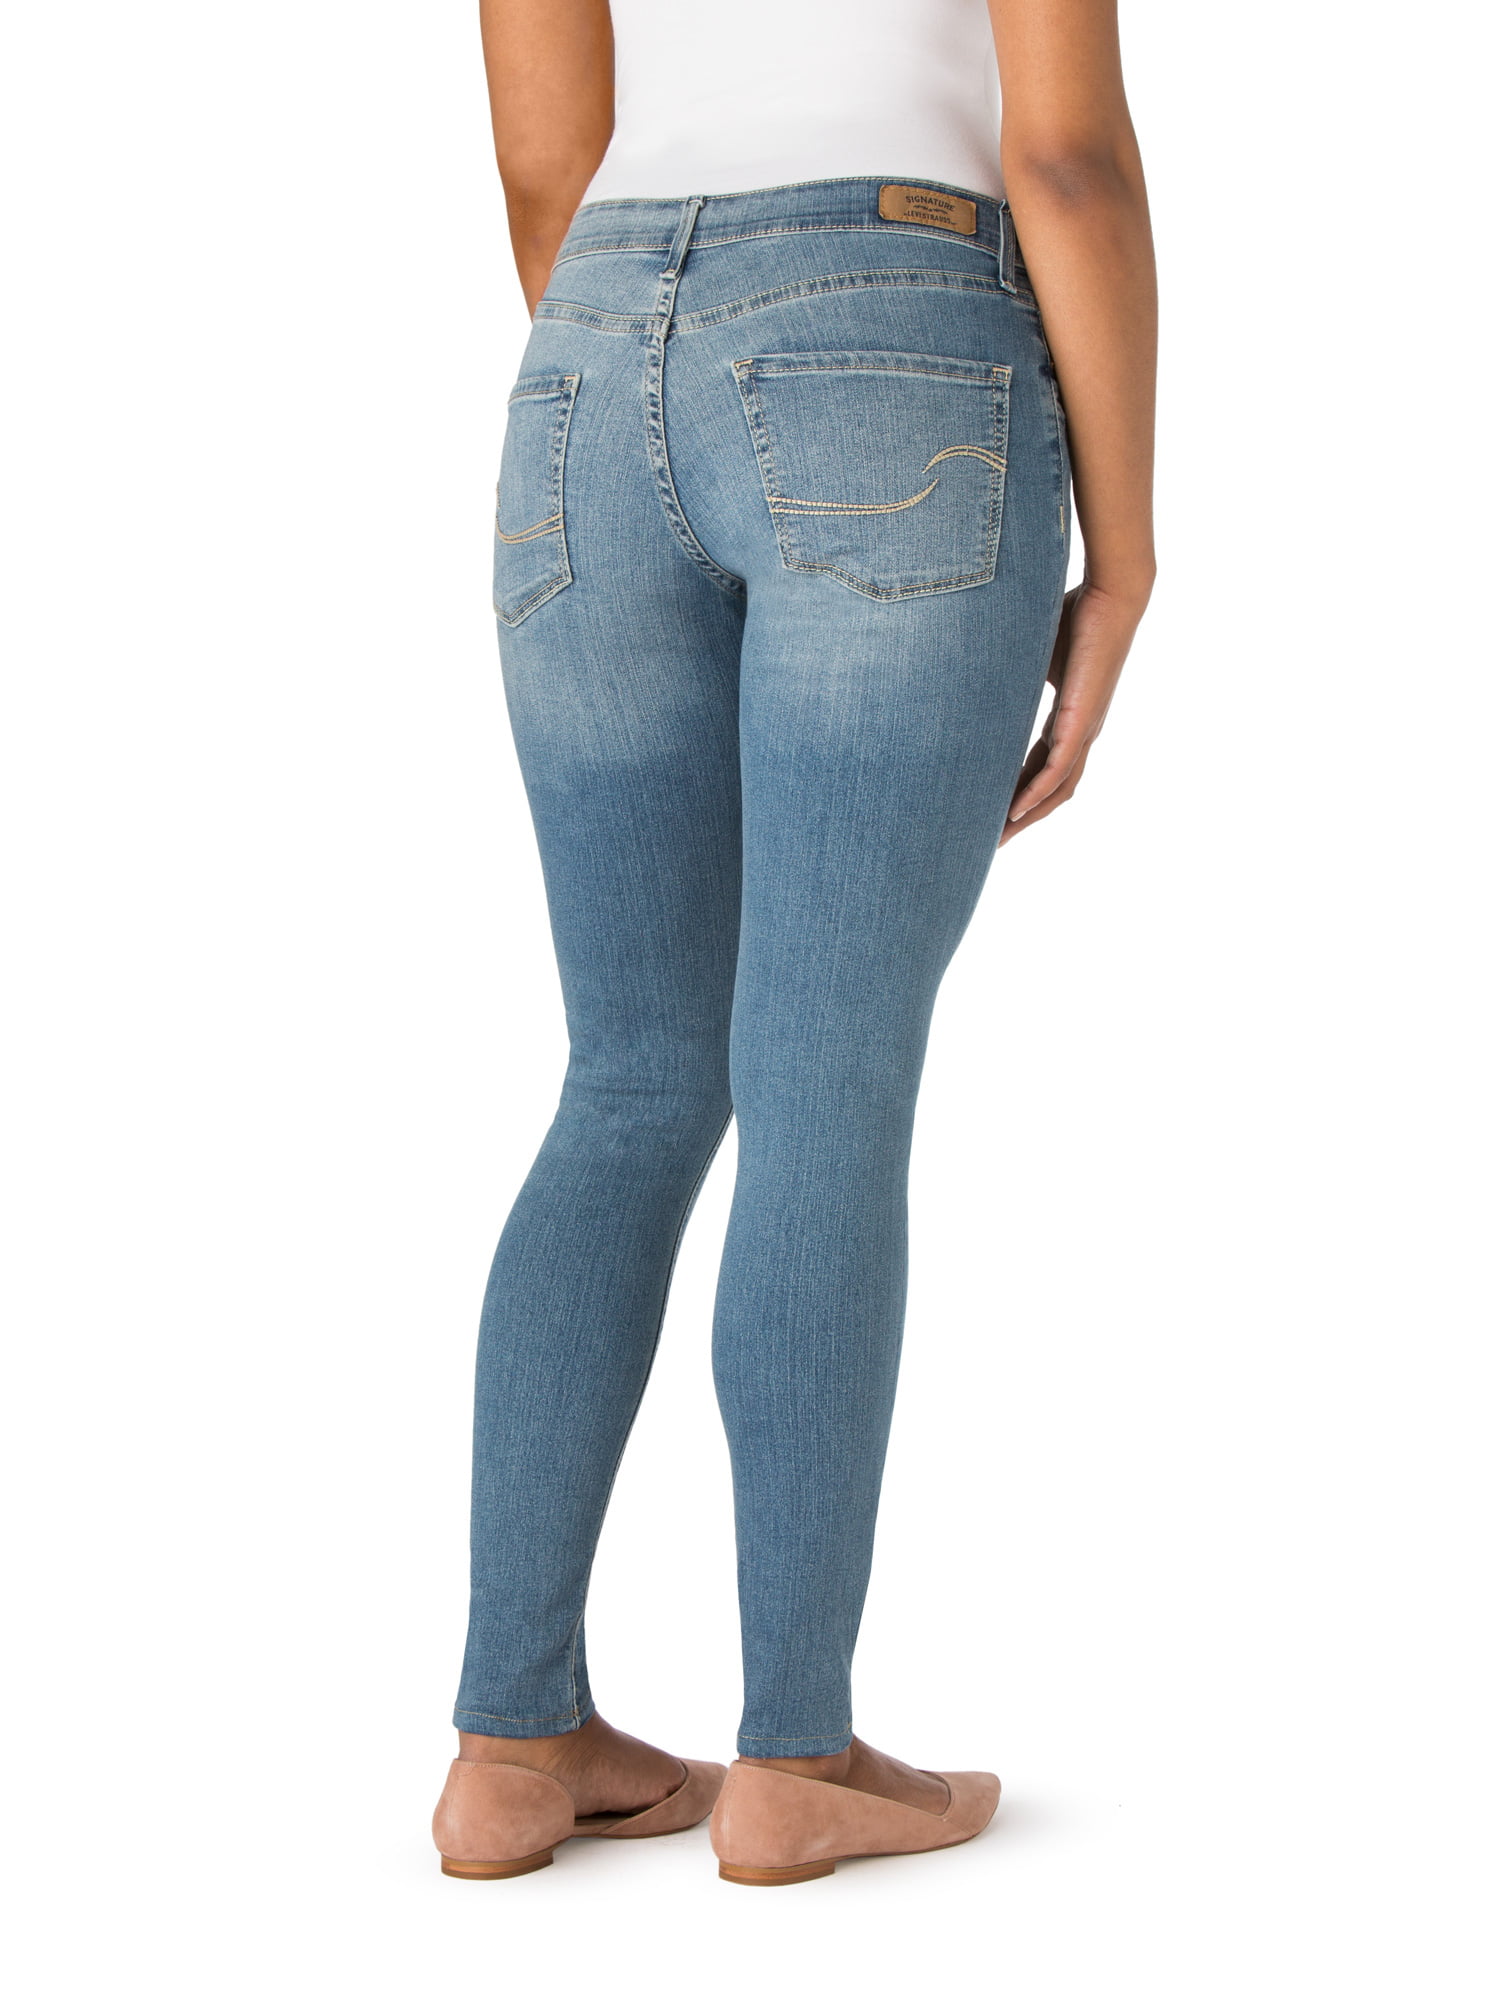 Modern Skinny Jeans - Walmart 